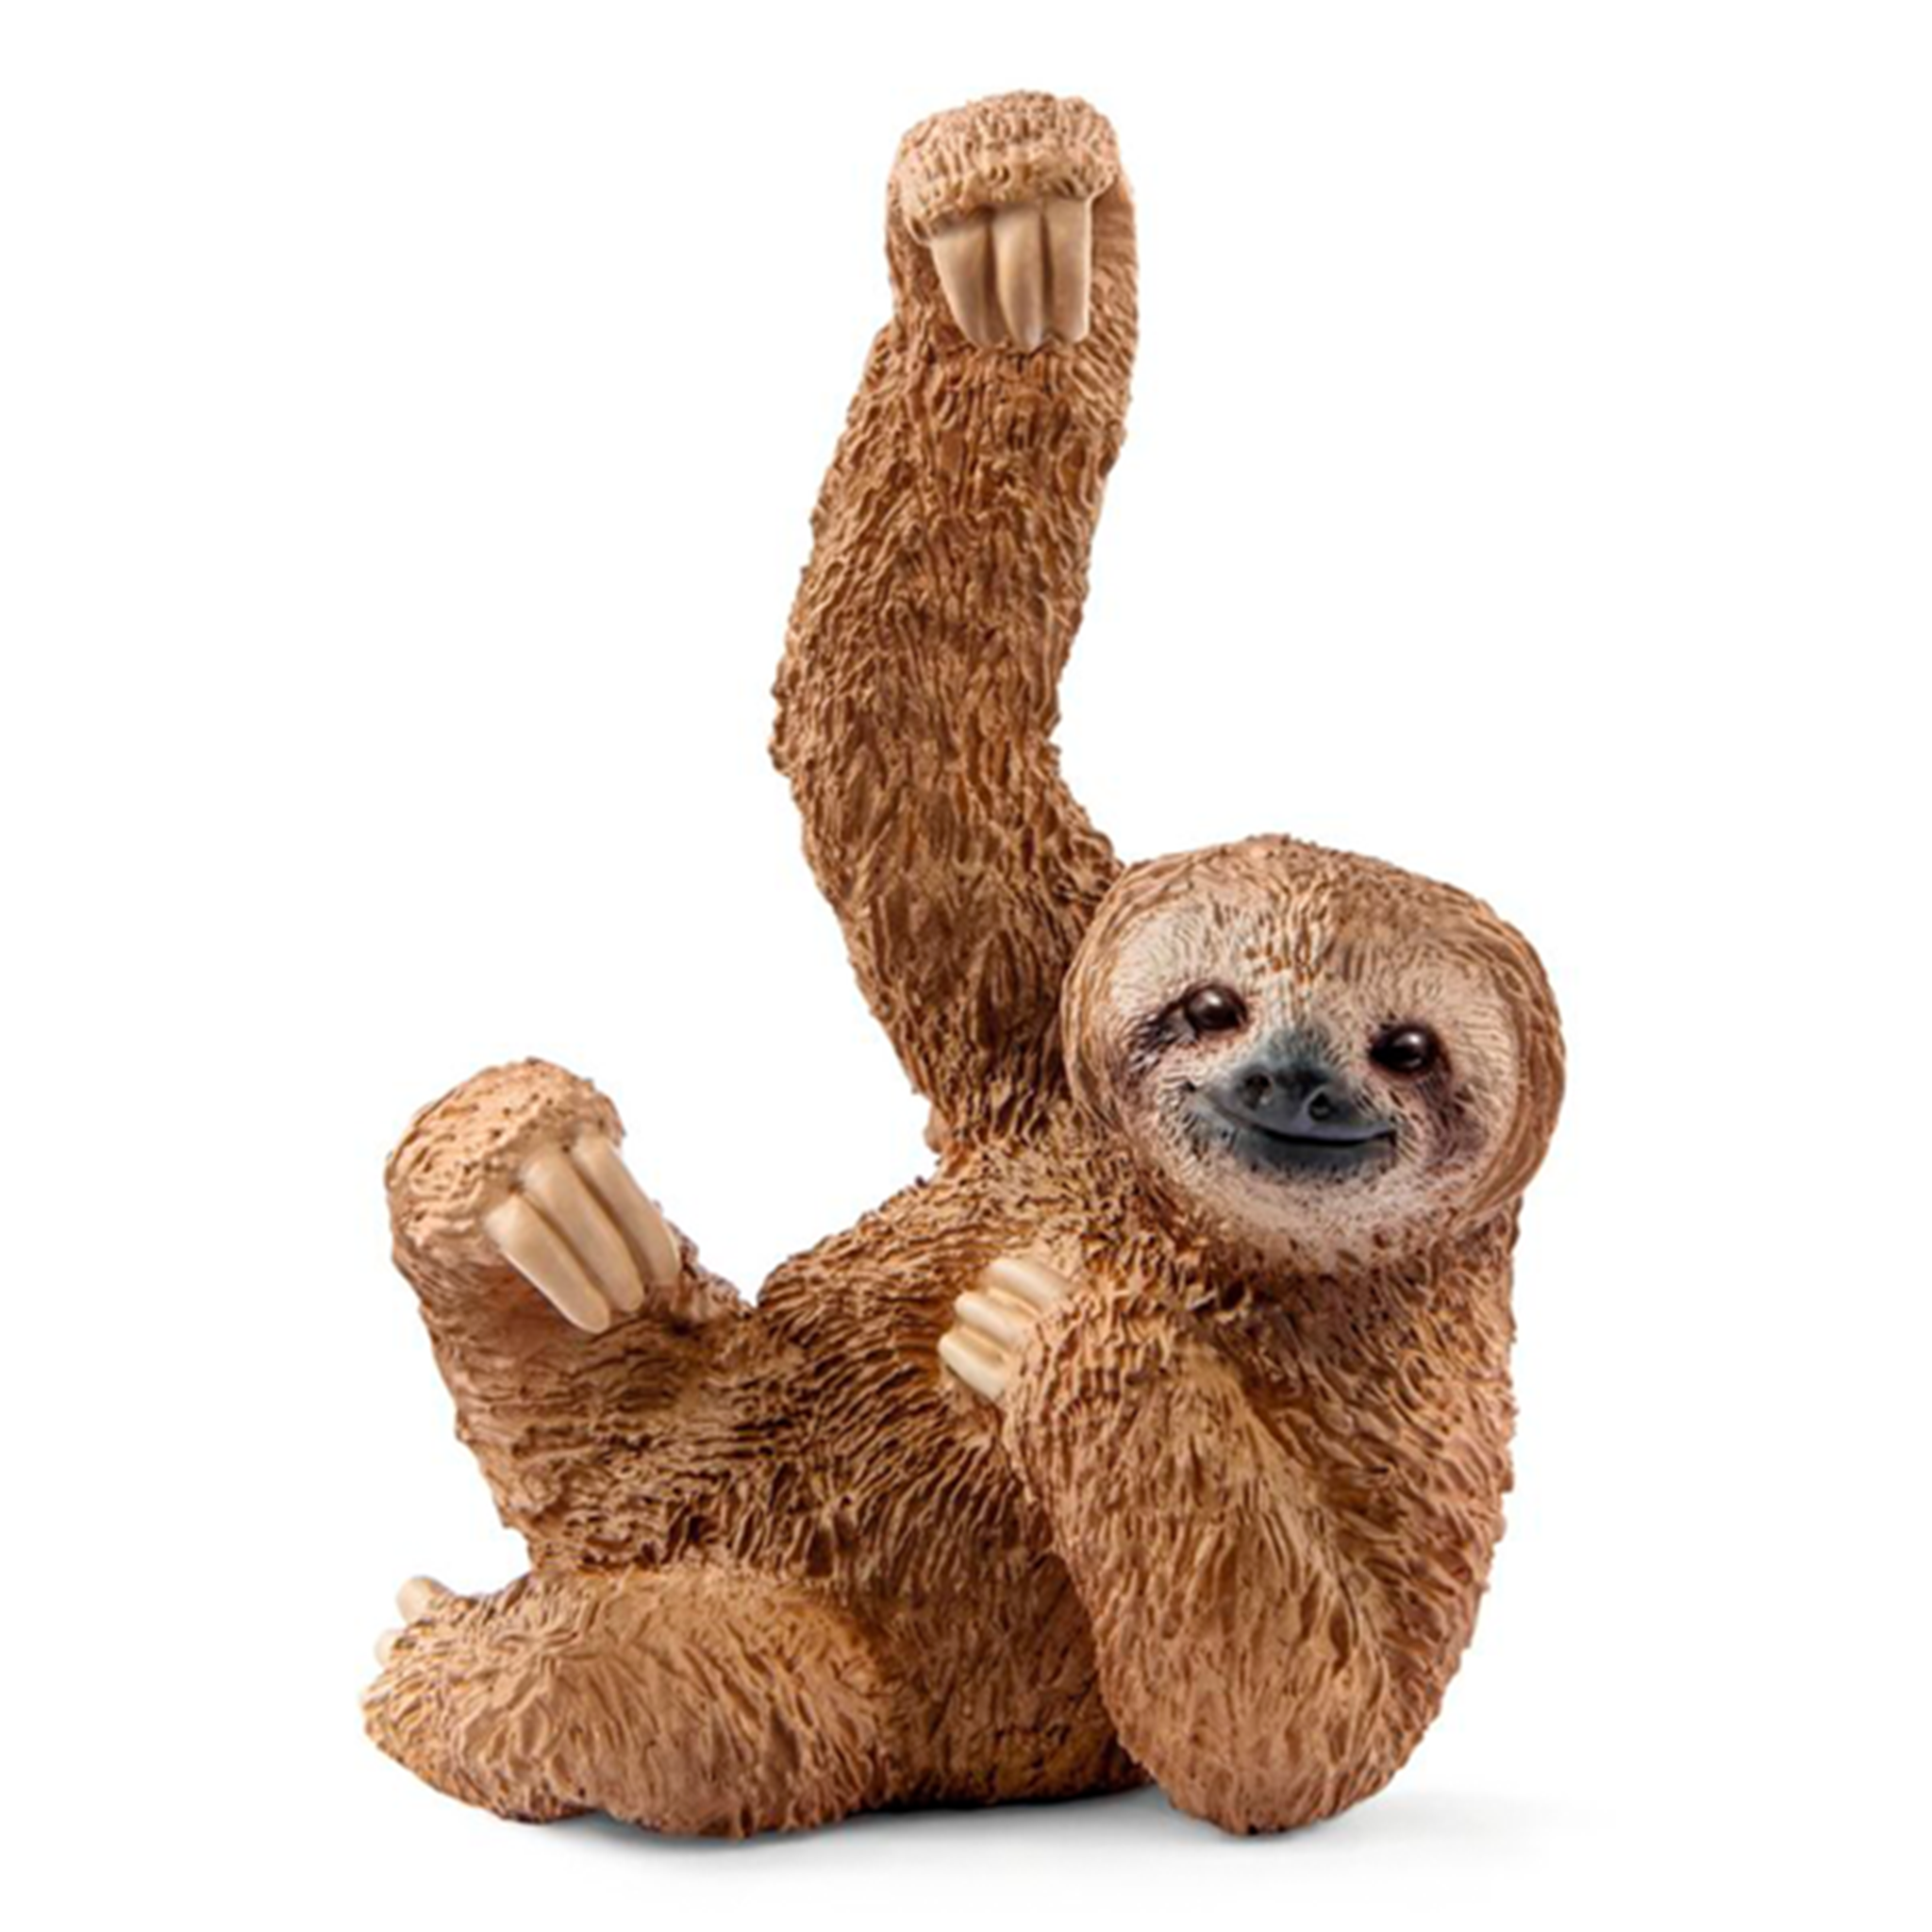 Schleich Wild Life Sloth